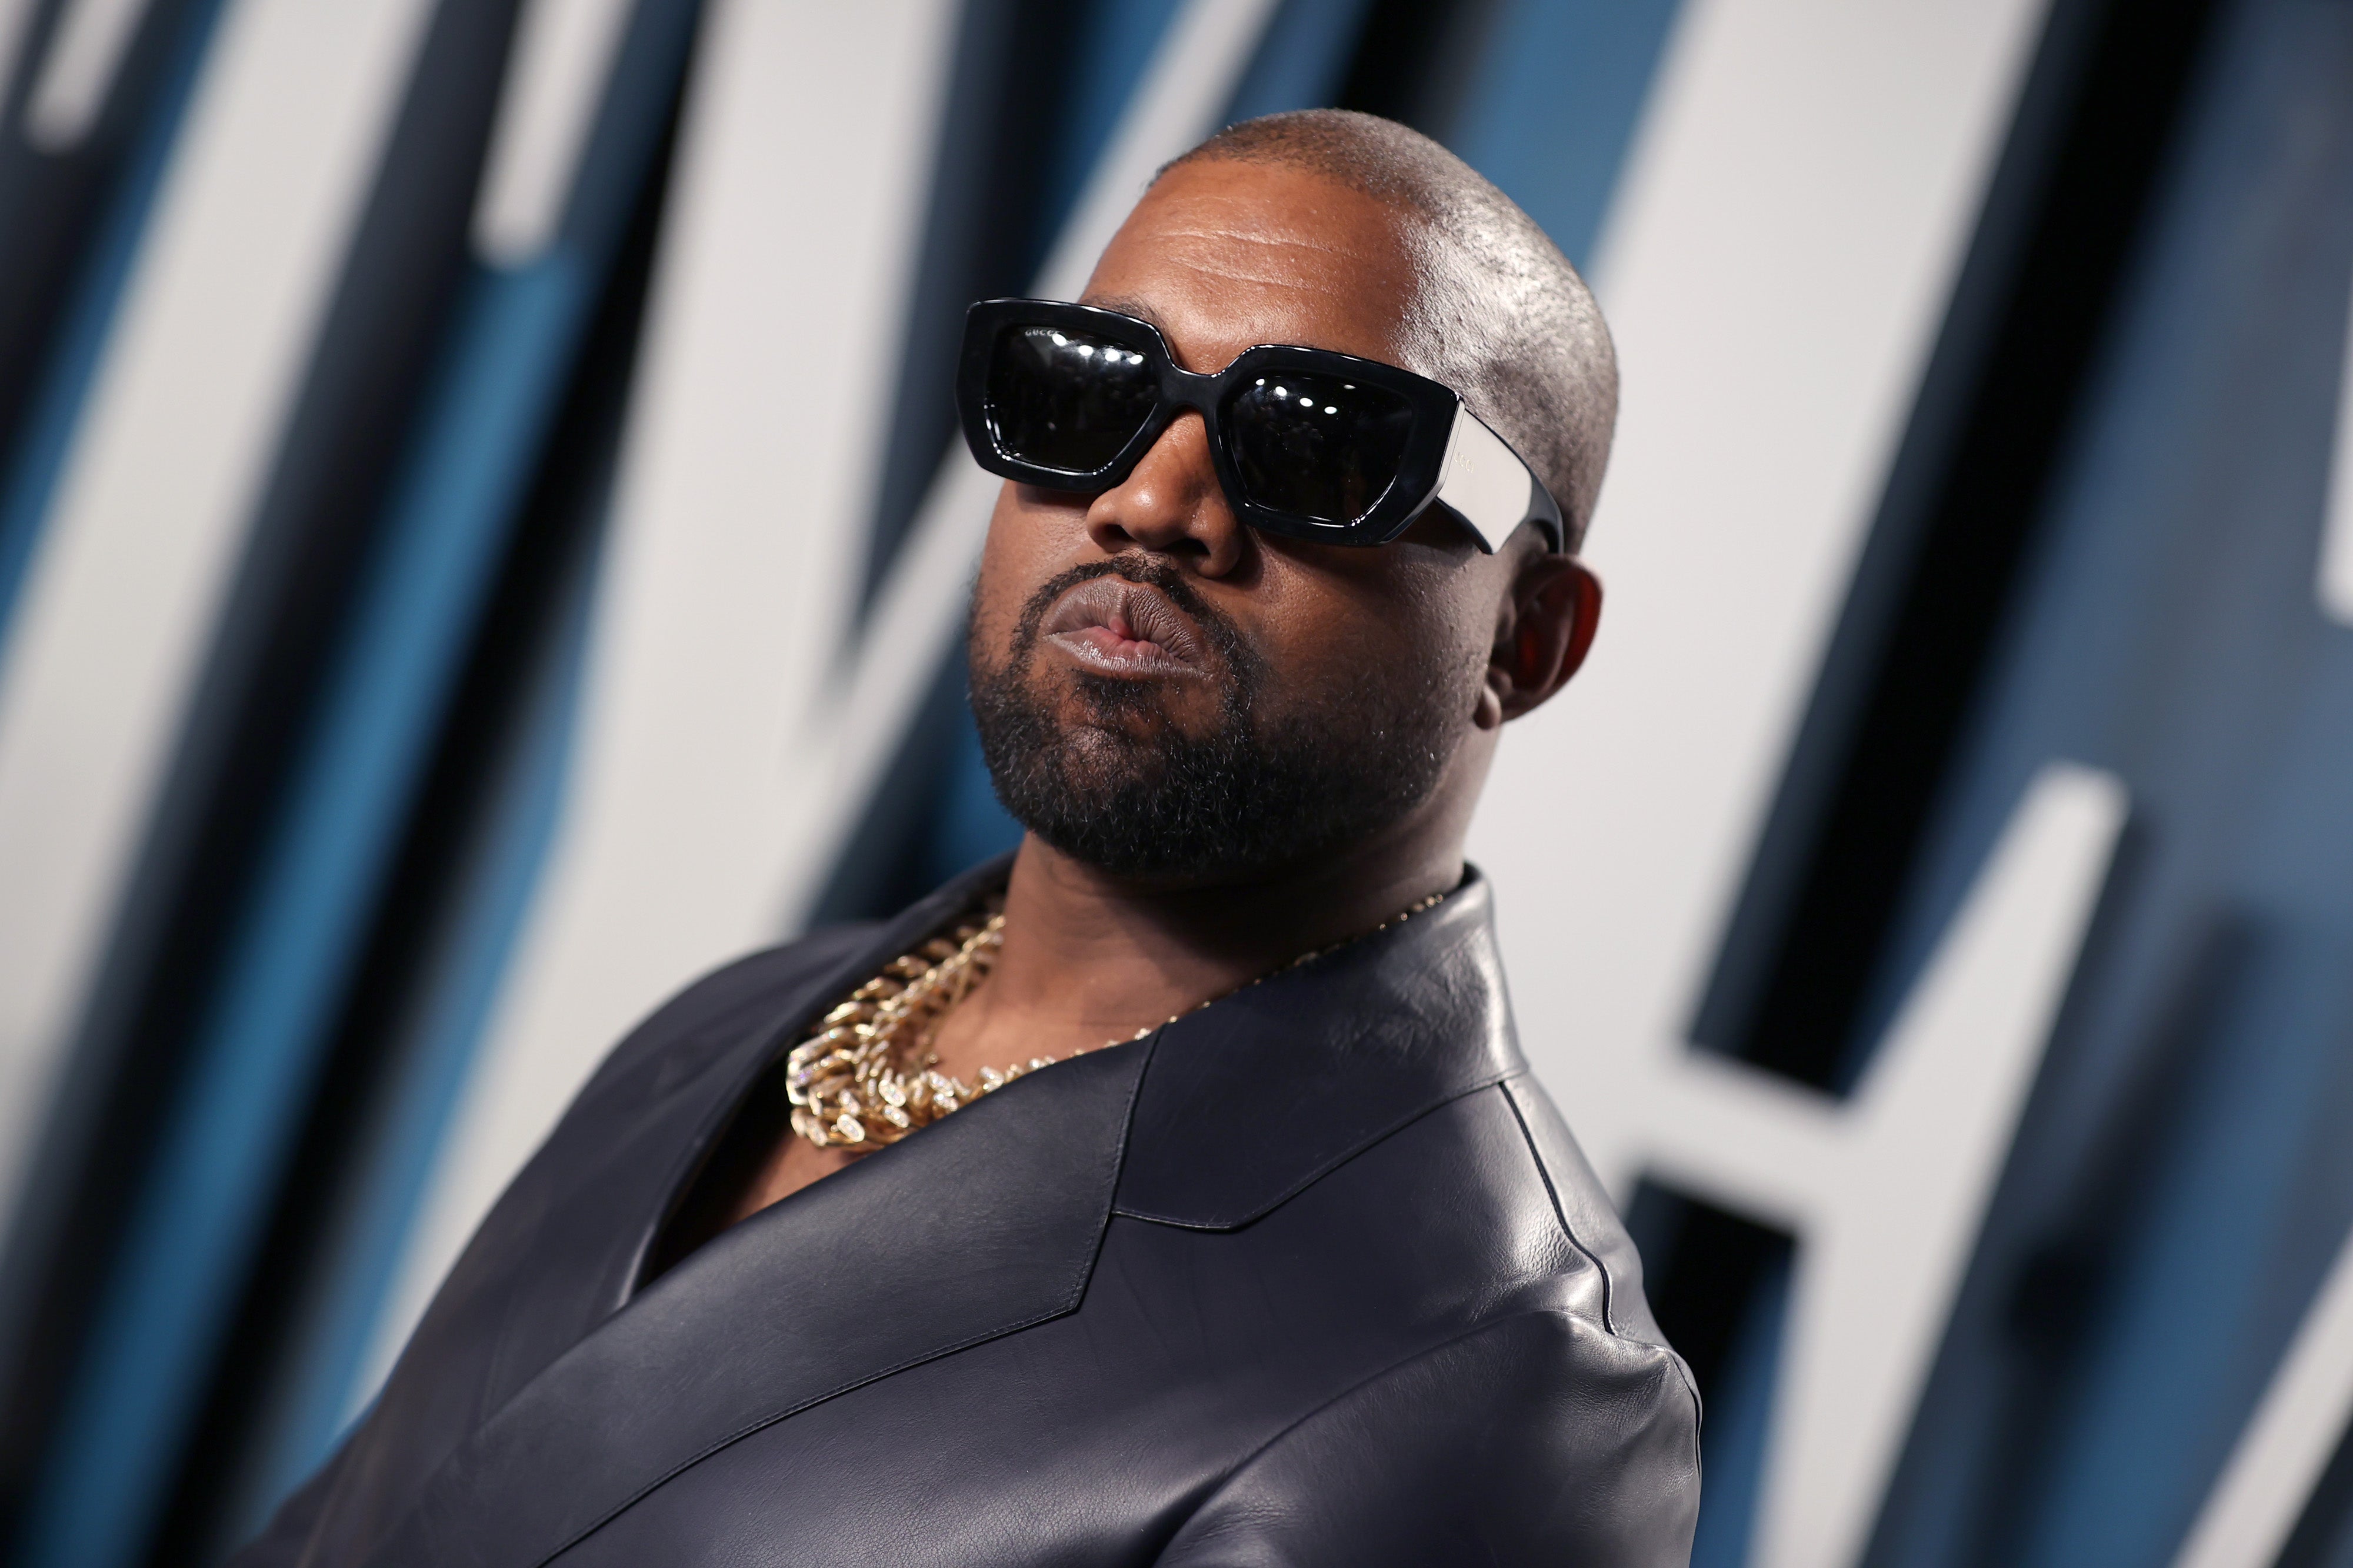 Vše, co jste chtěli vědět o novém albu Kanyeho Westa